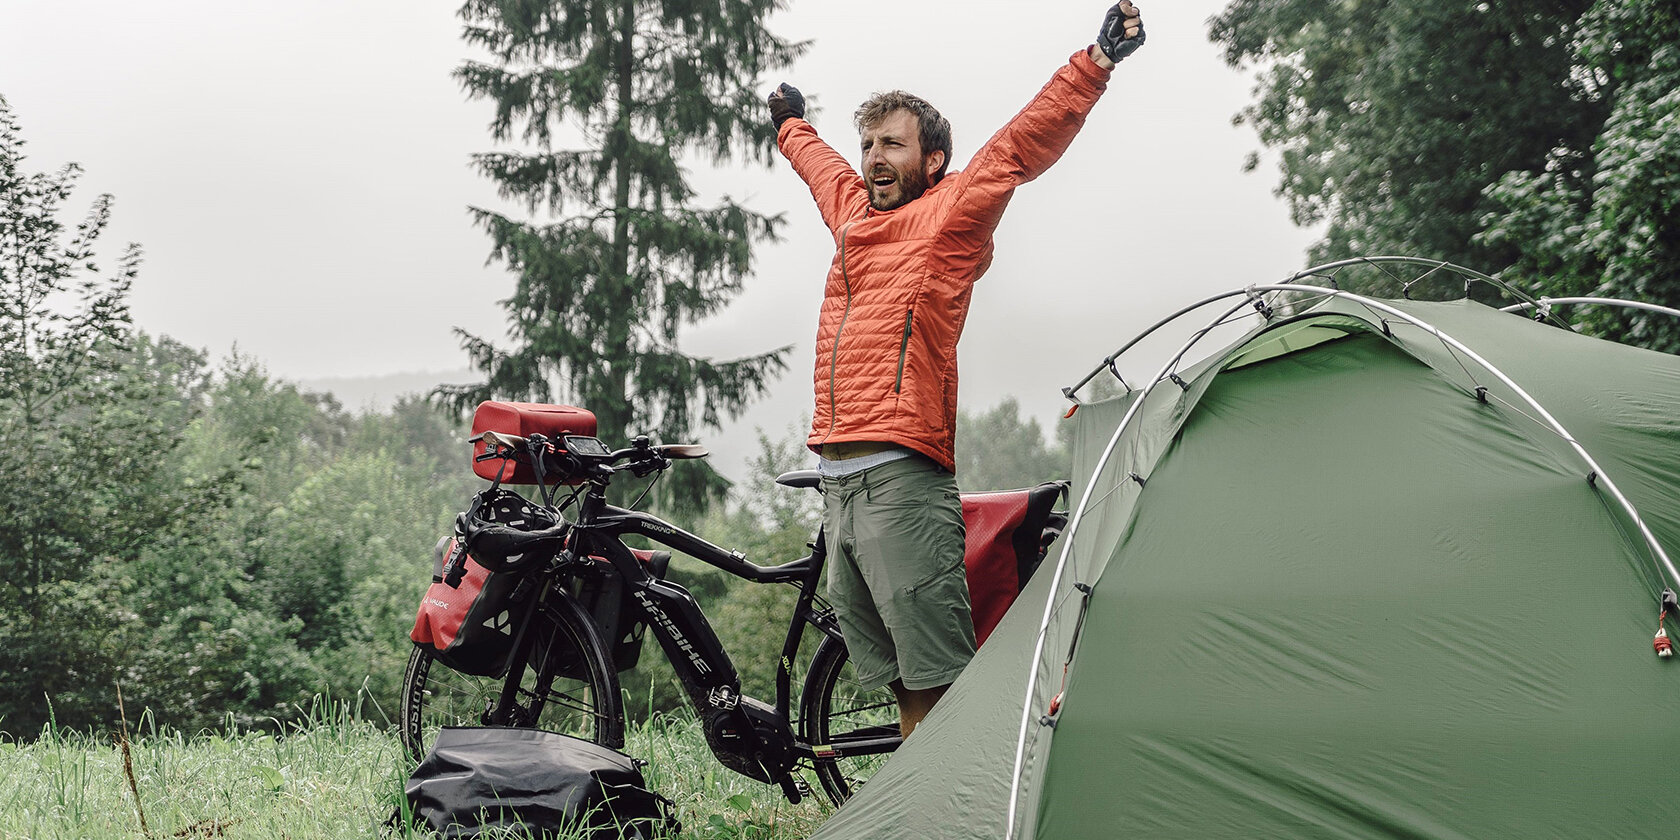 Der Fotograf Maximilian Semsch steht zwischen seinem eBike und Zelt und streckt seine Arme in die Höhe